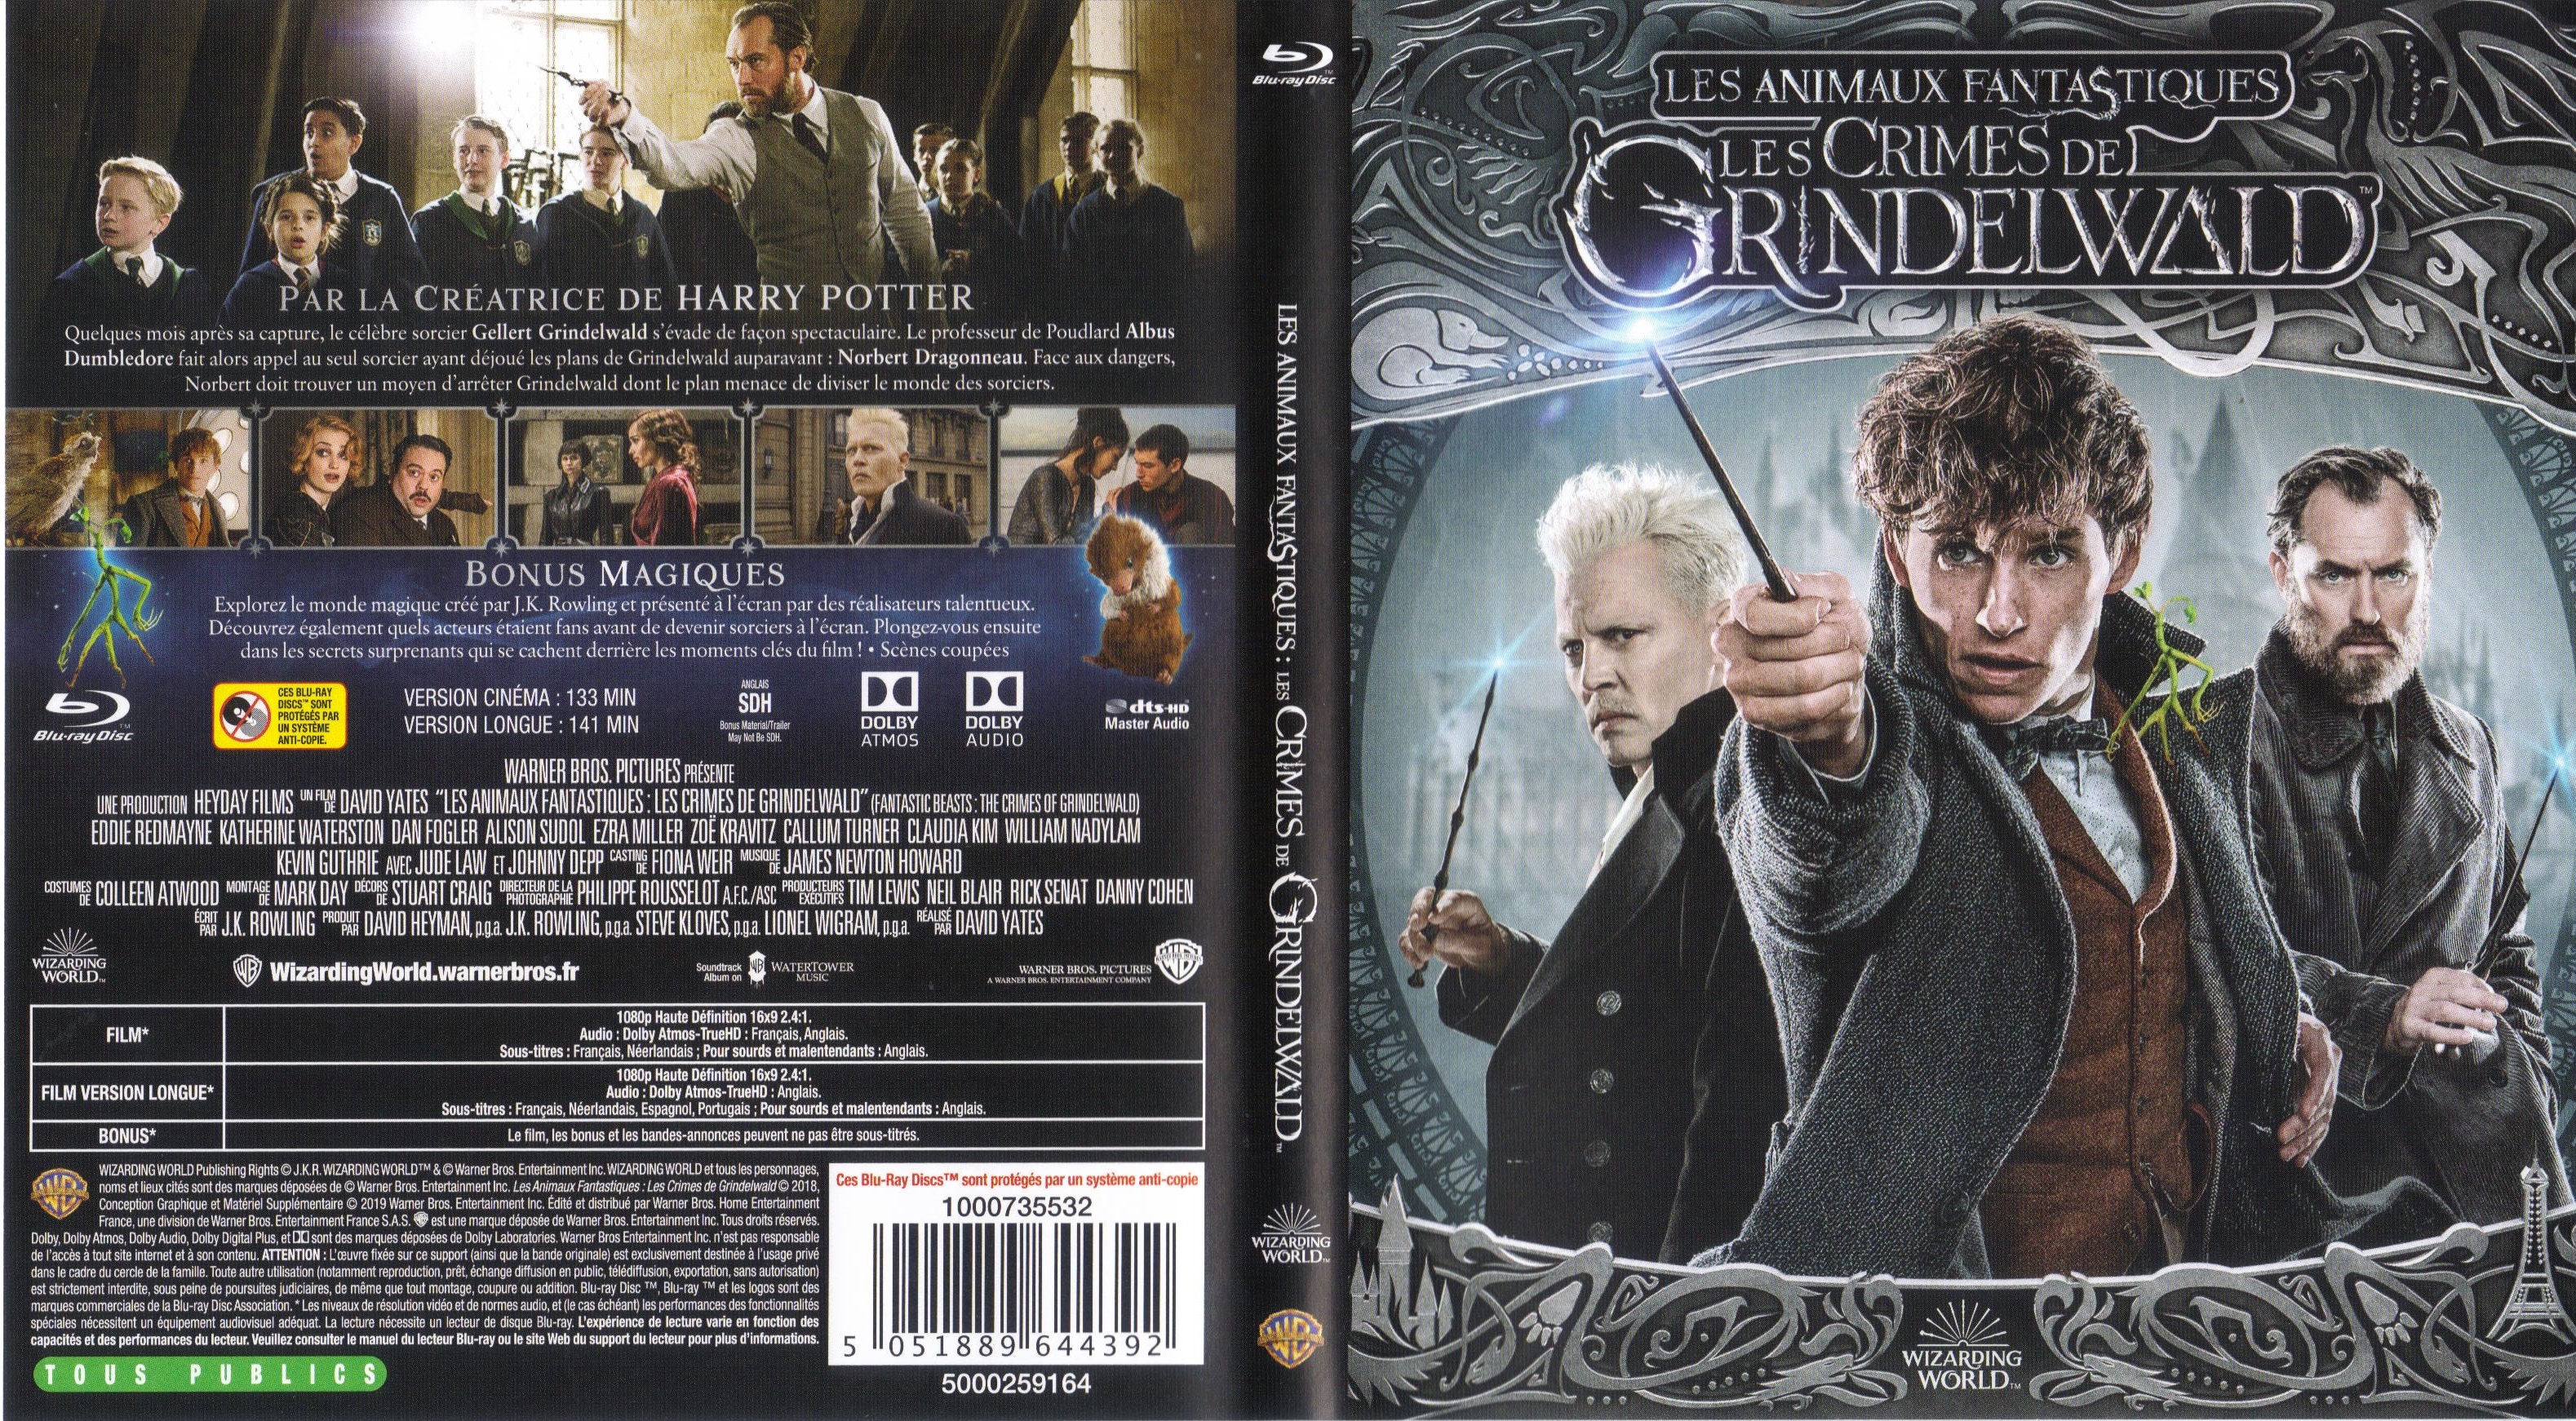 Jaquette DVD Les animaux fantastiques Les crimes de Grindelwald (BLU-RAY)